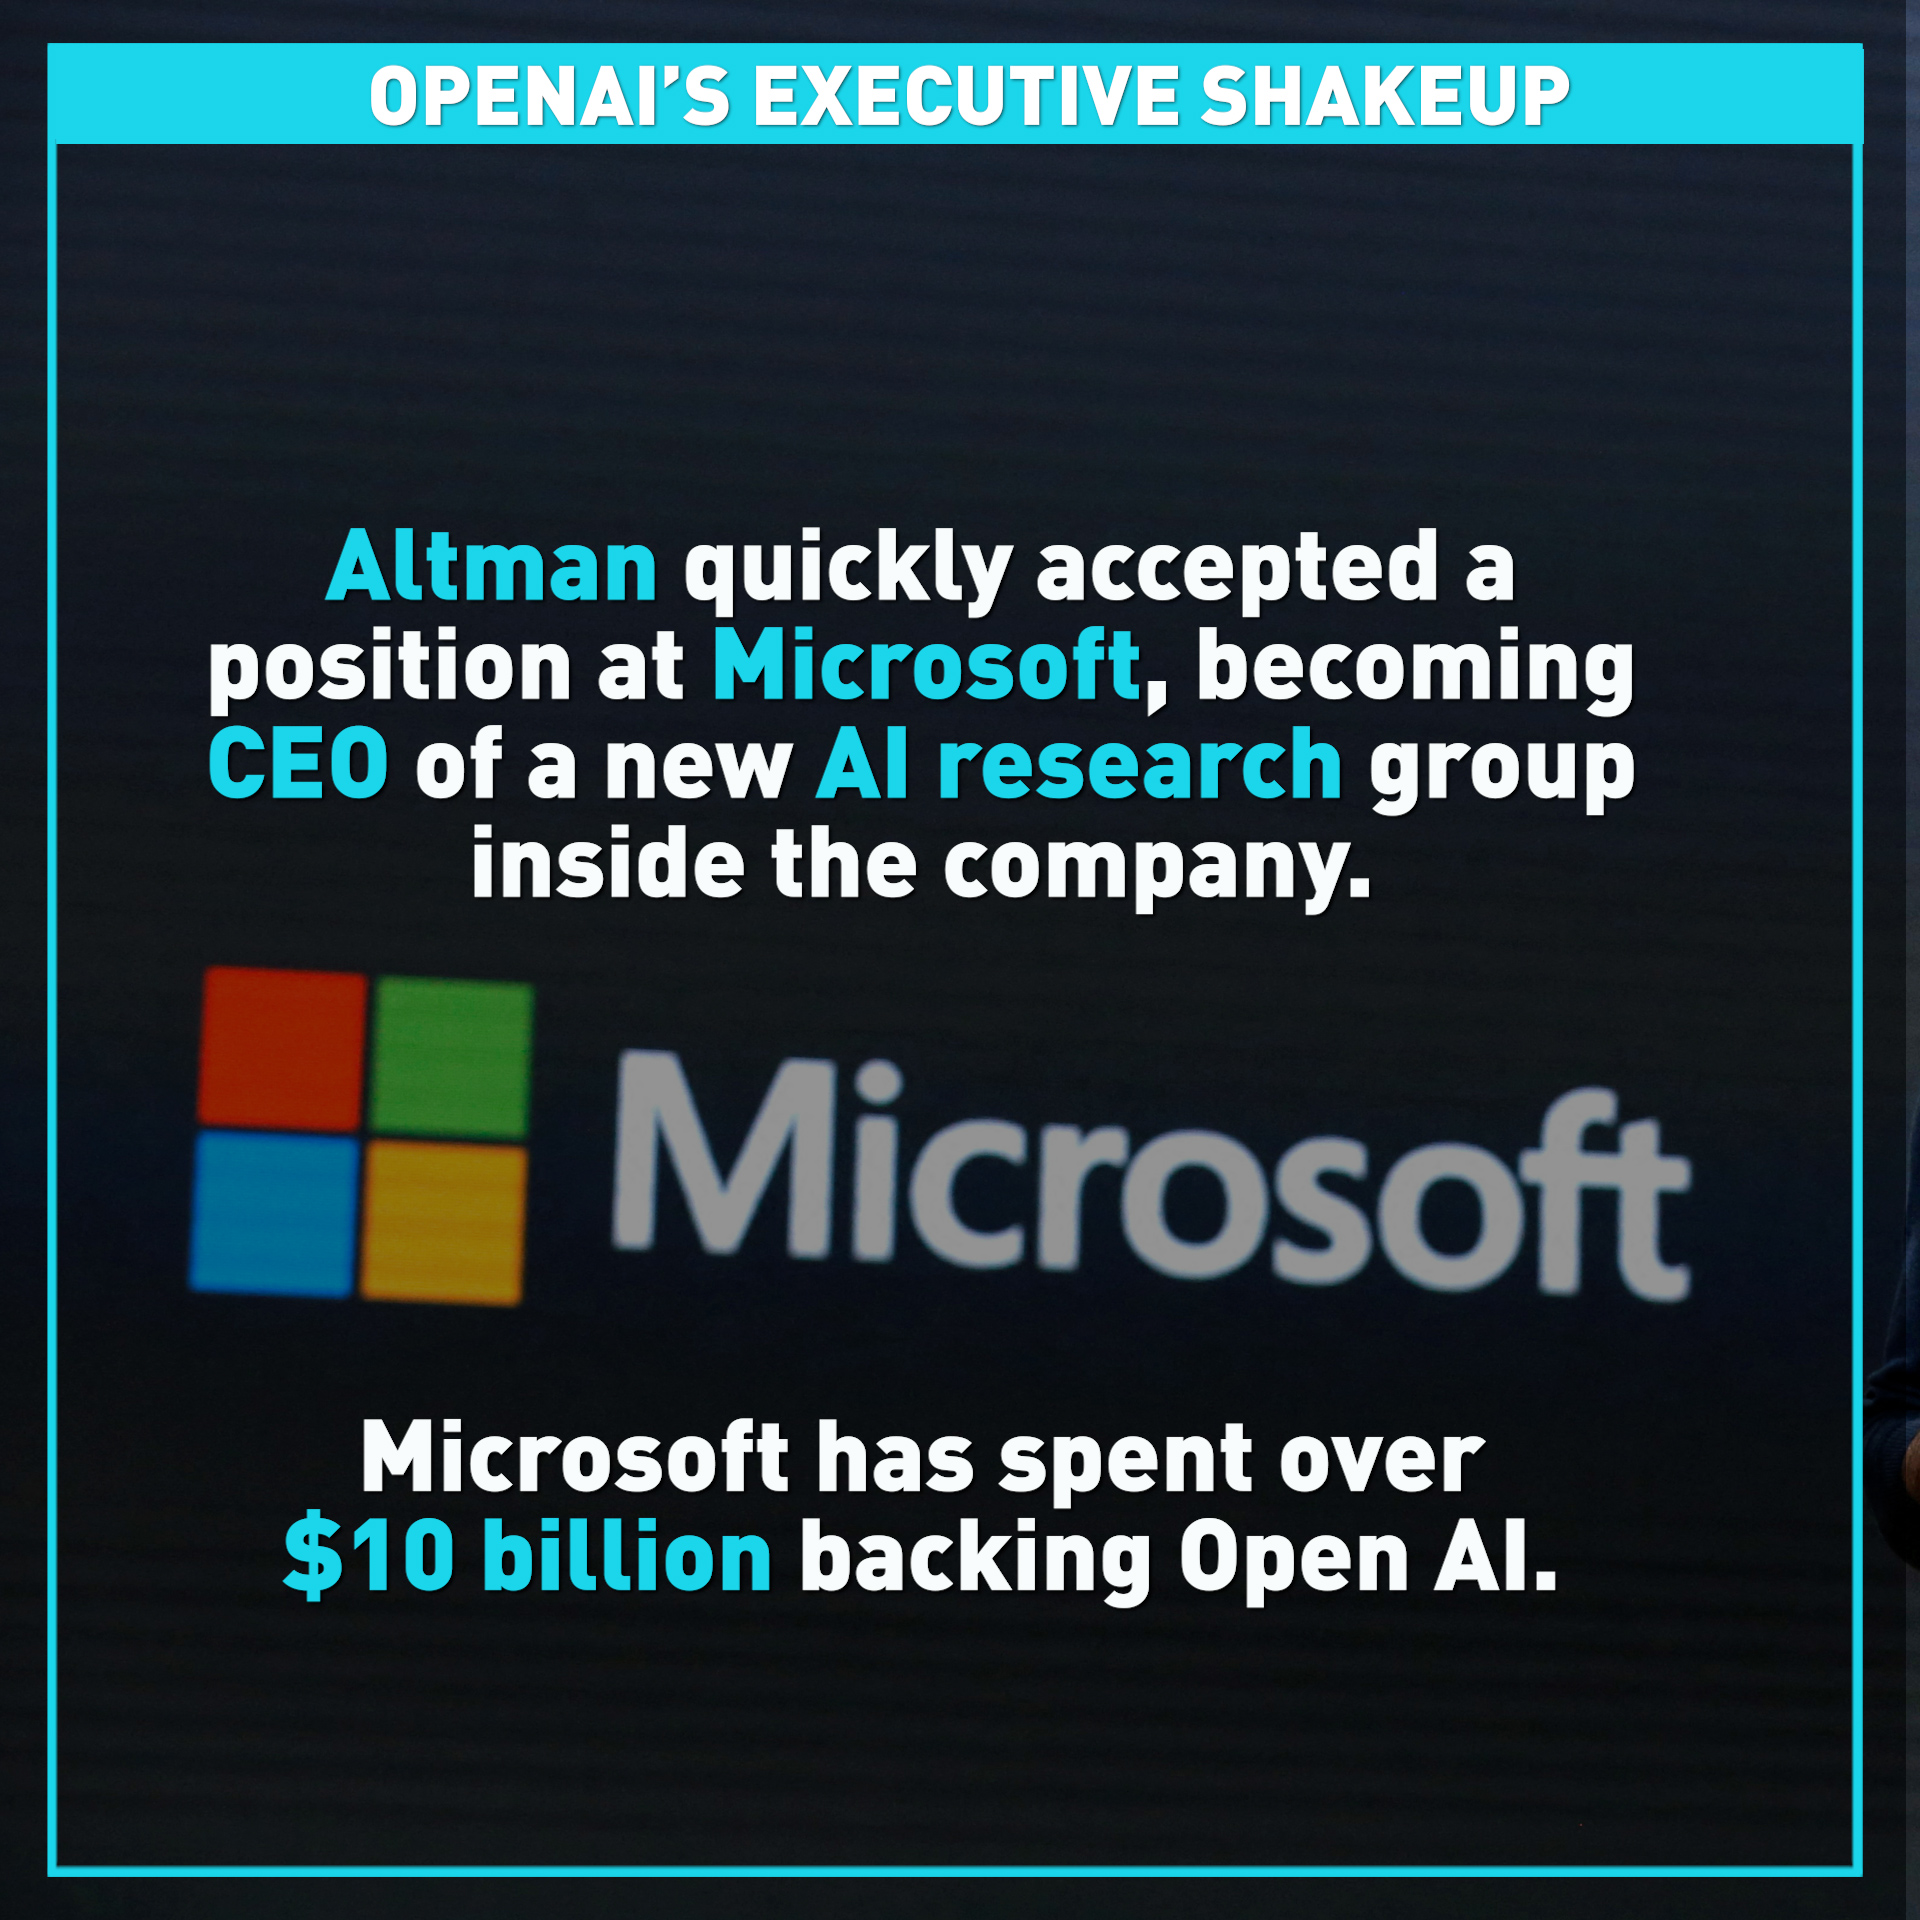 OpenAI’s executive shakeup